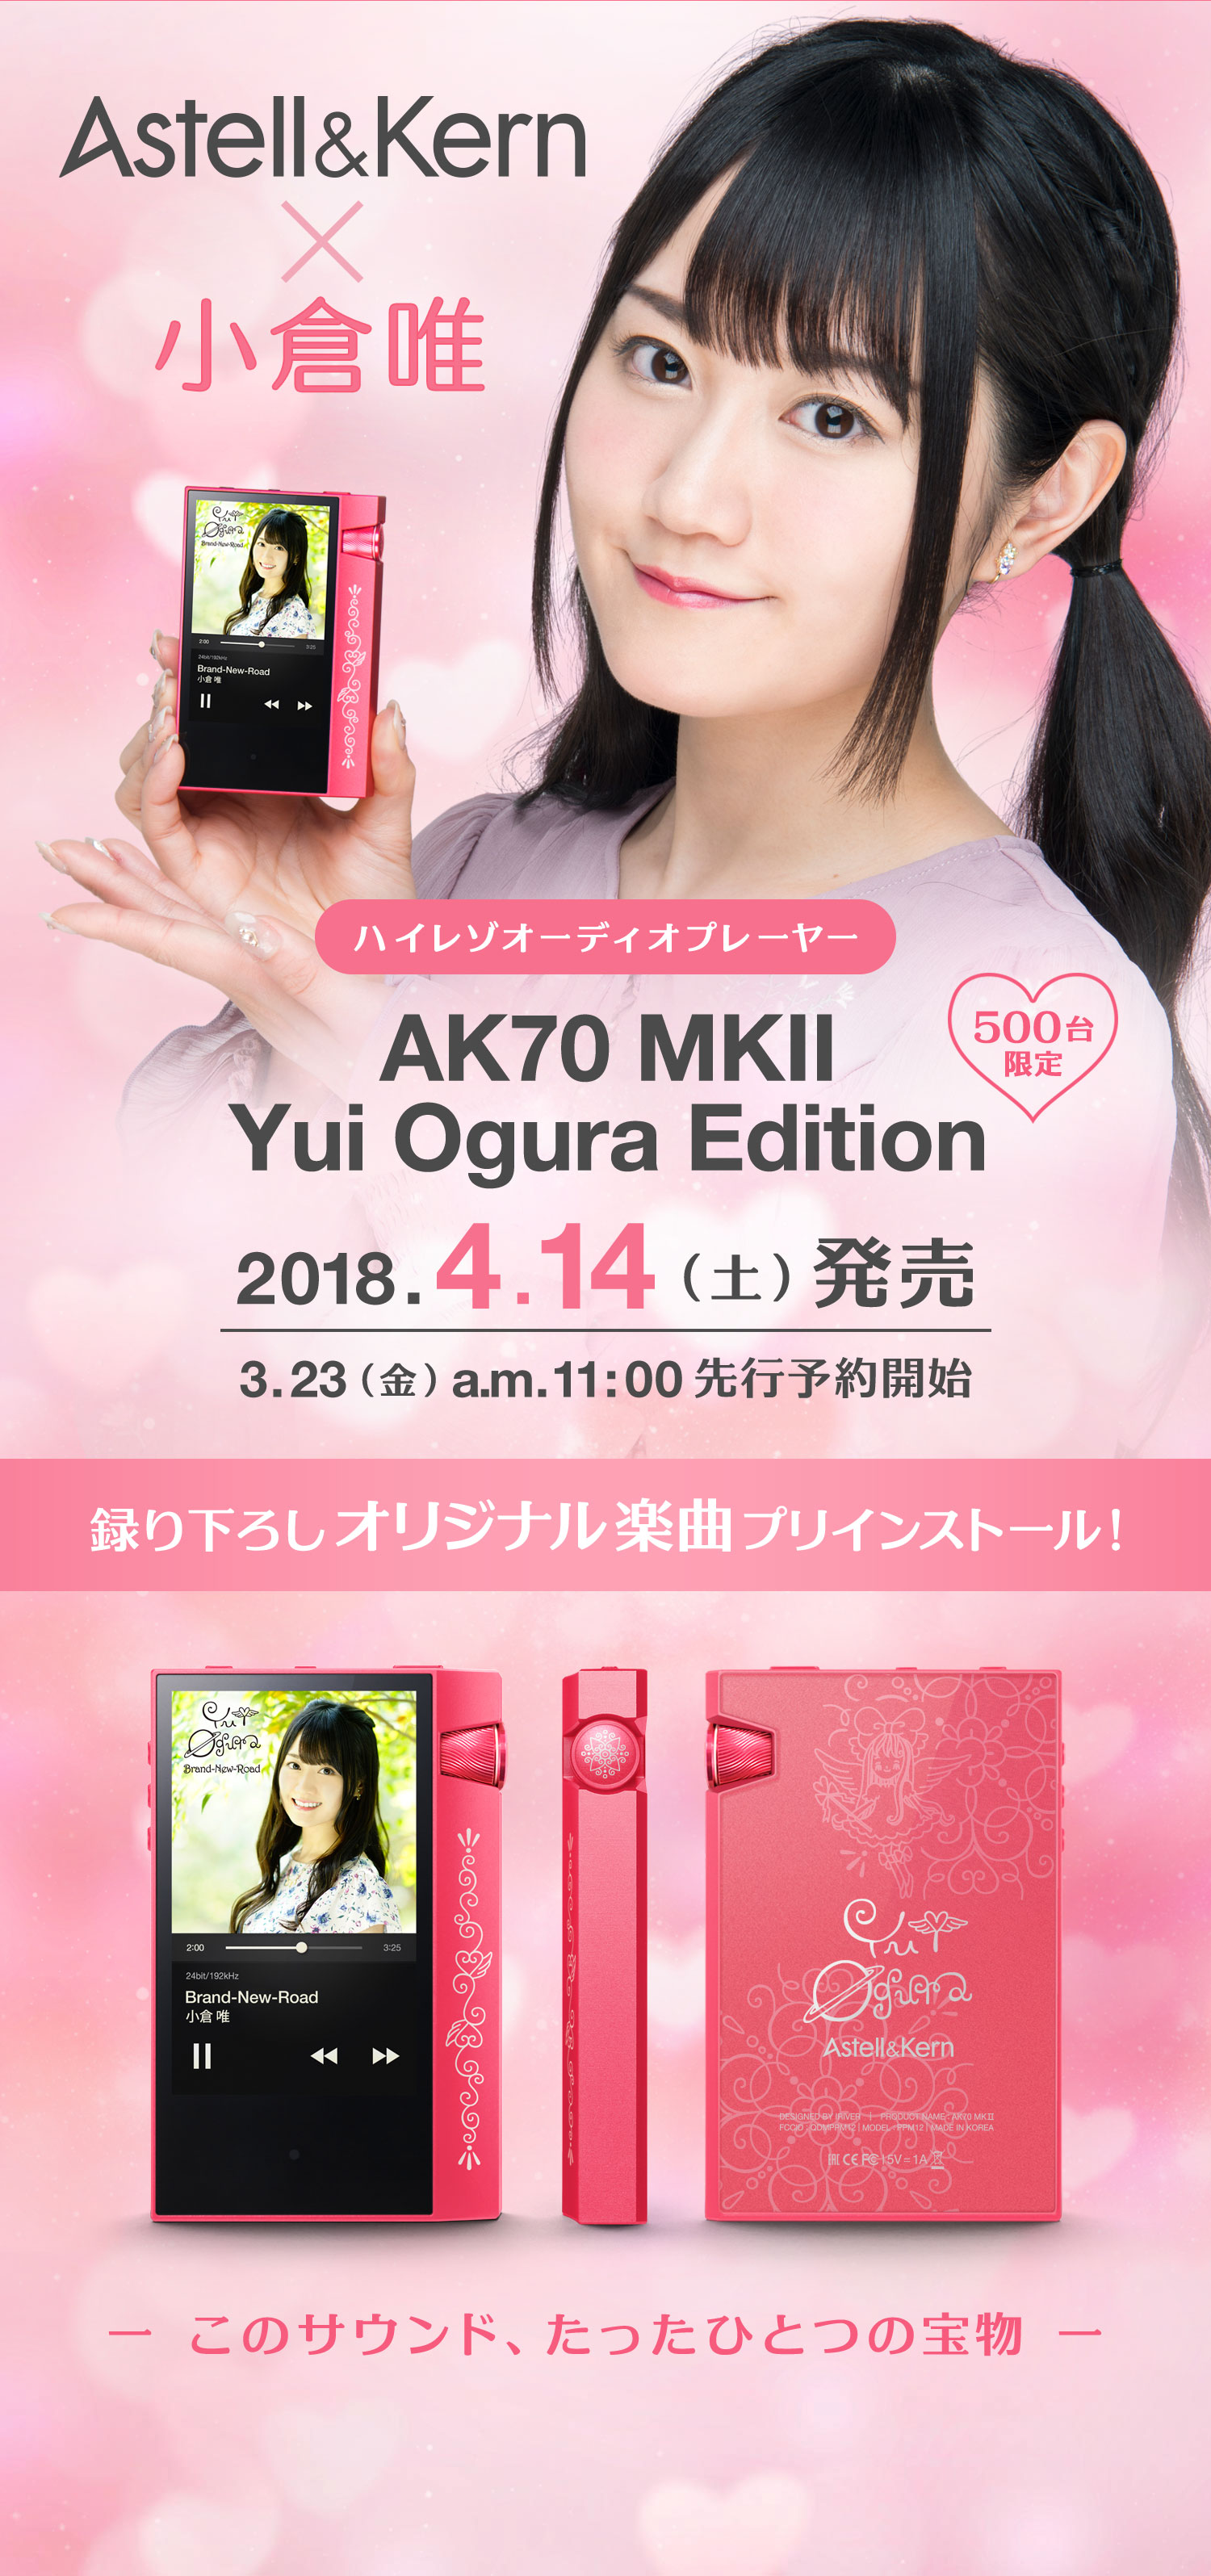 購入最安価格 AK70 Astell&Kern MKII Edition Ogura Yui ポータブルプレーヤー